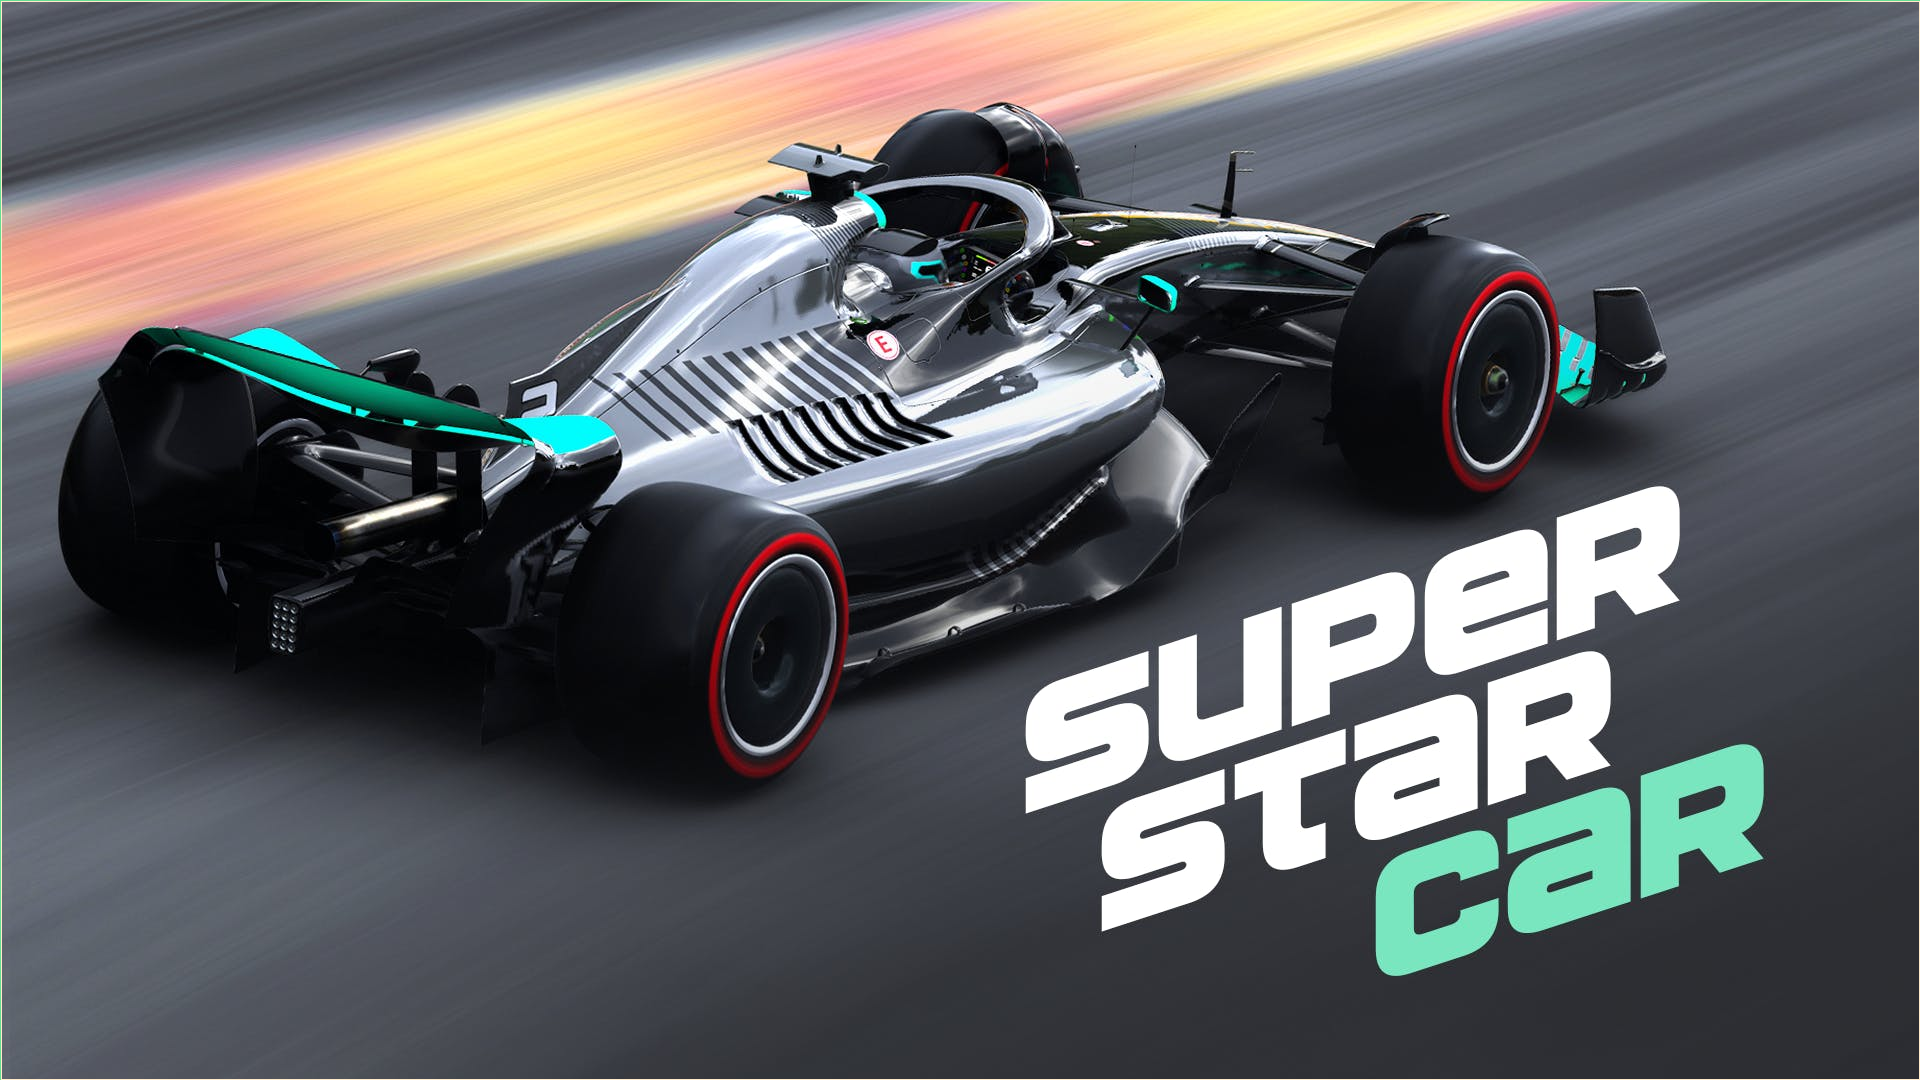 Super Star Car / Carro super estrela 🔥 Jogue online